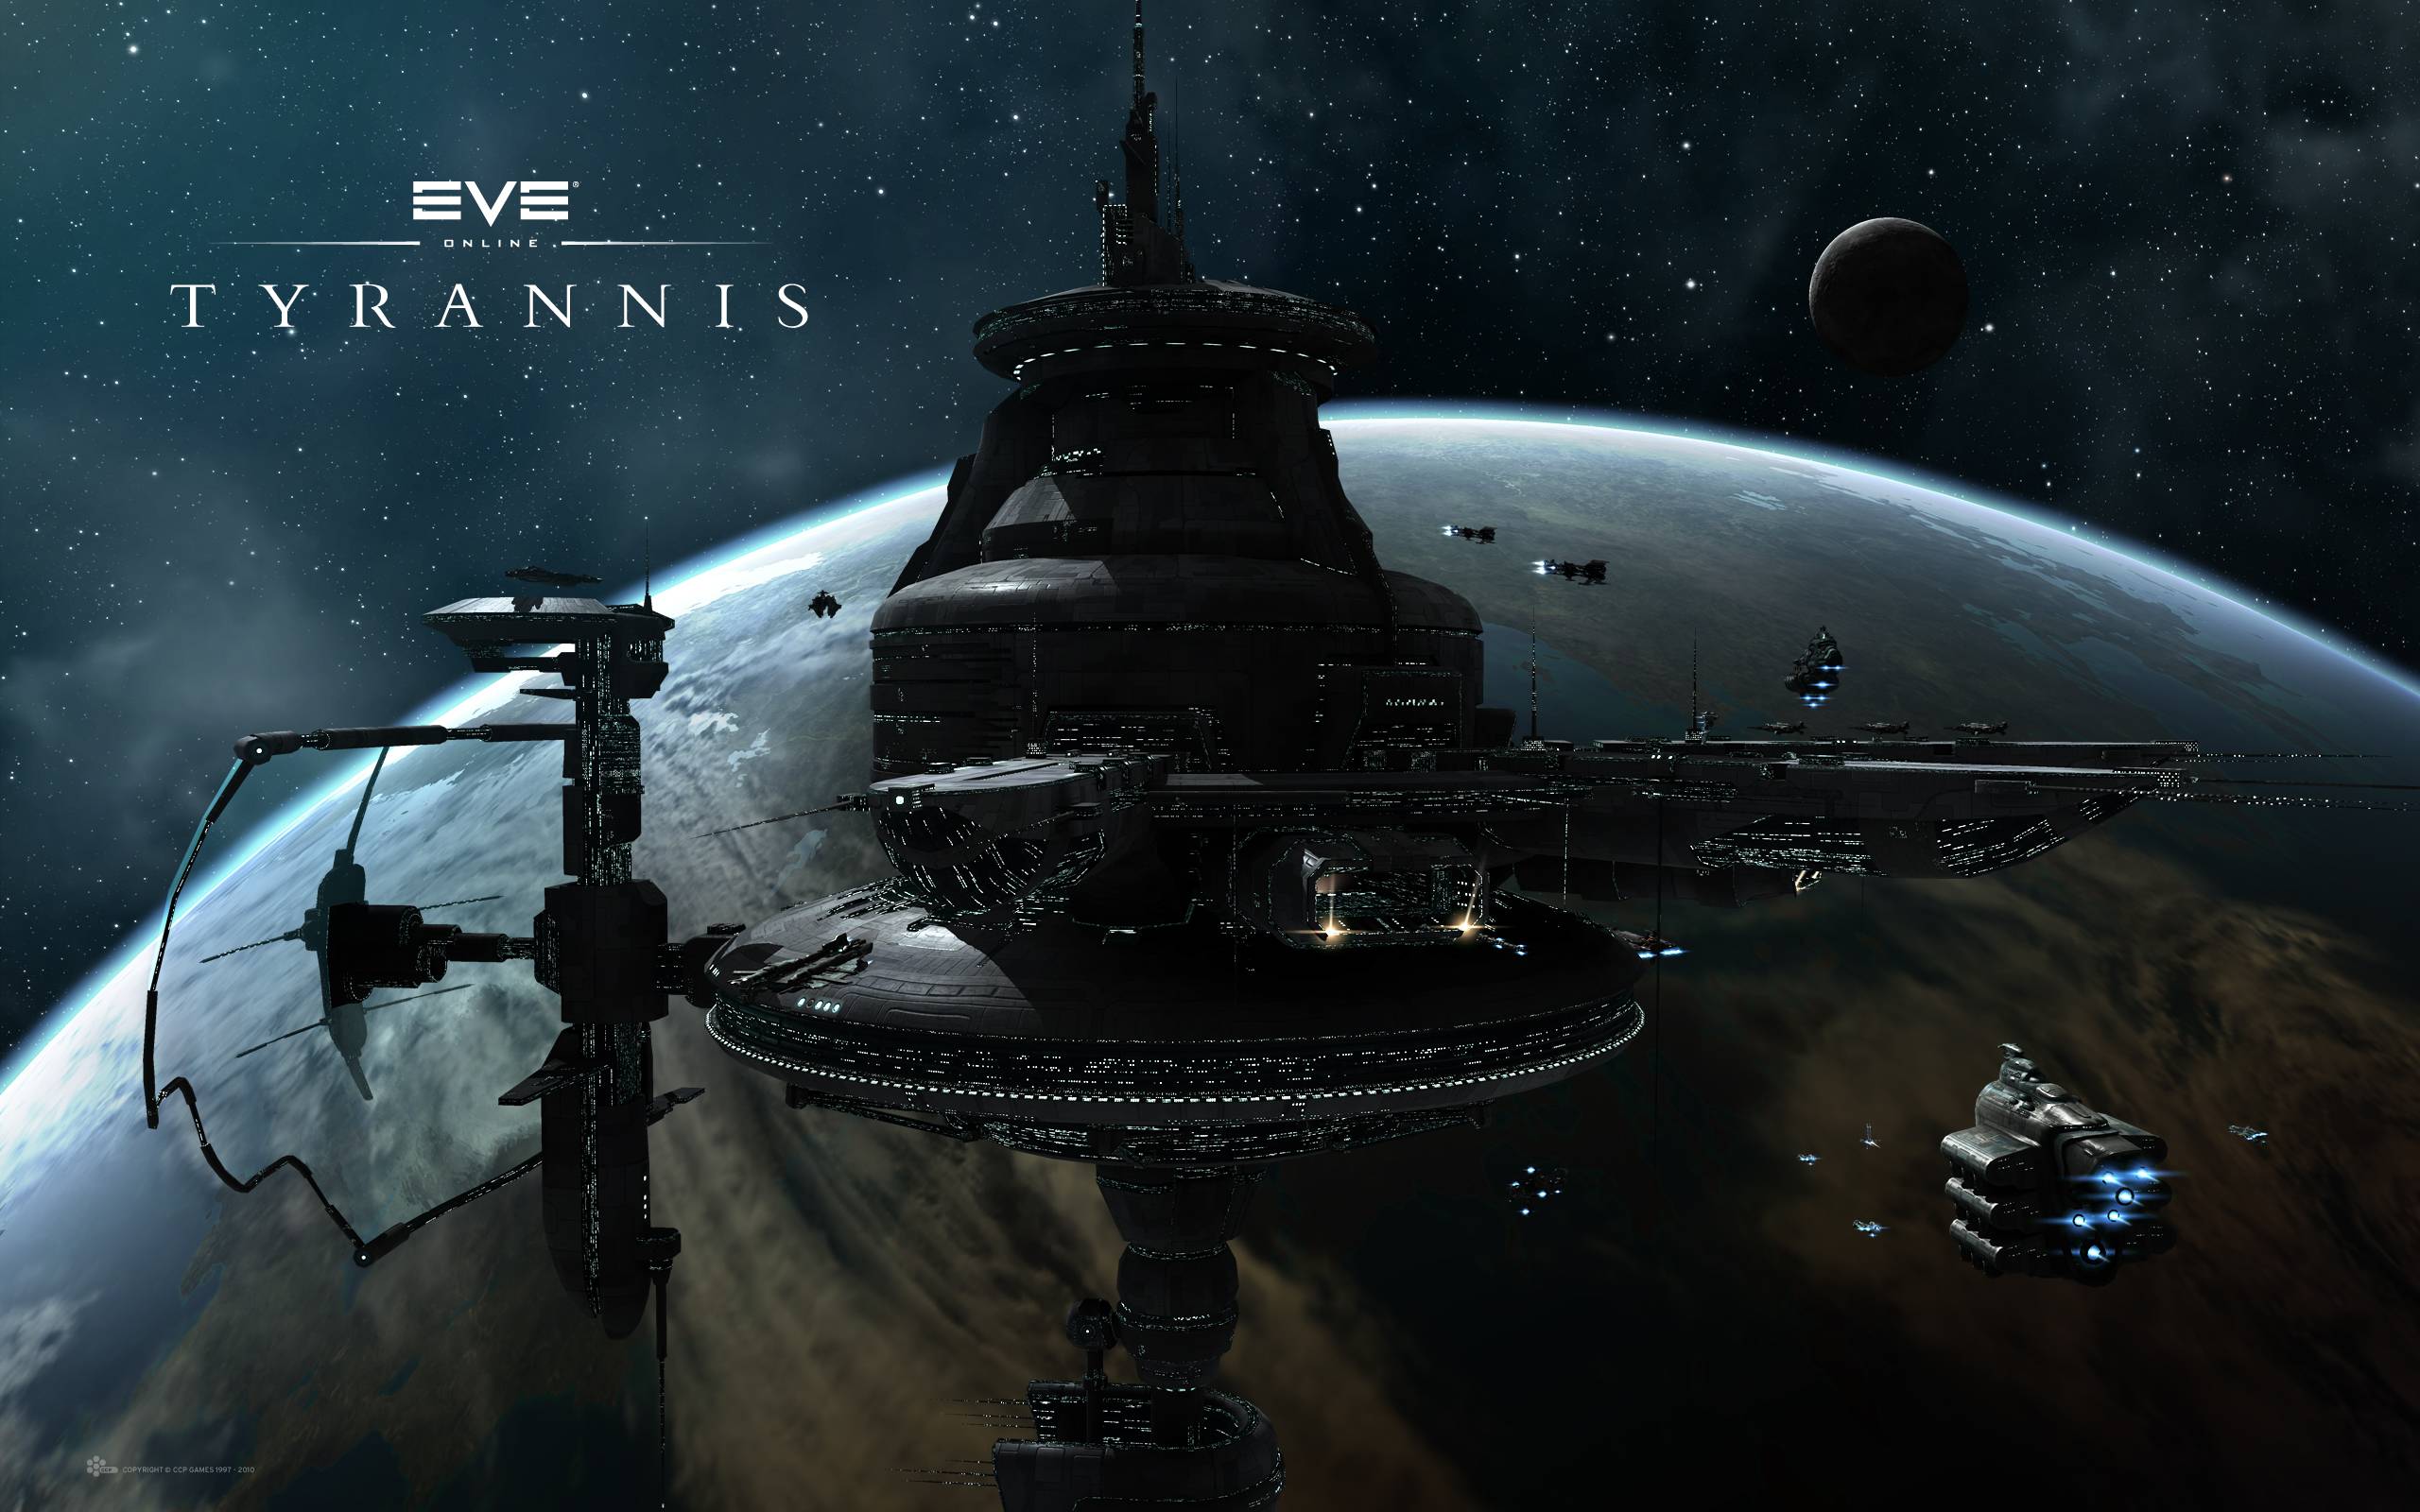 Eve Online Wallpaper. Eve Online Background